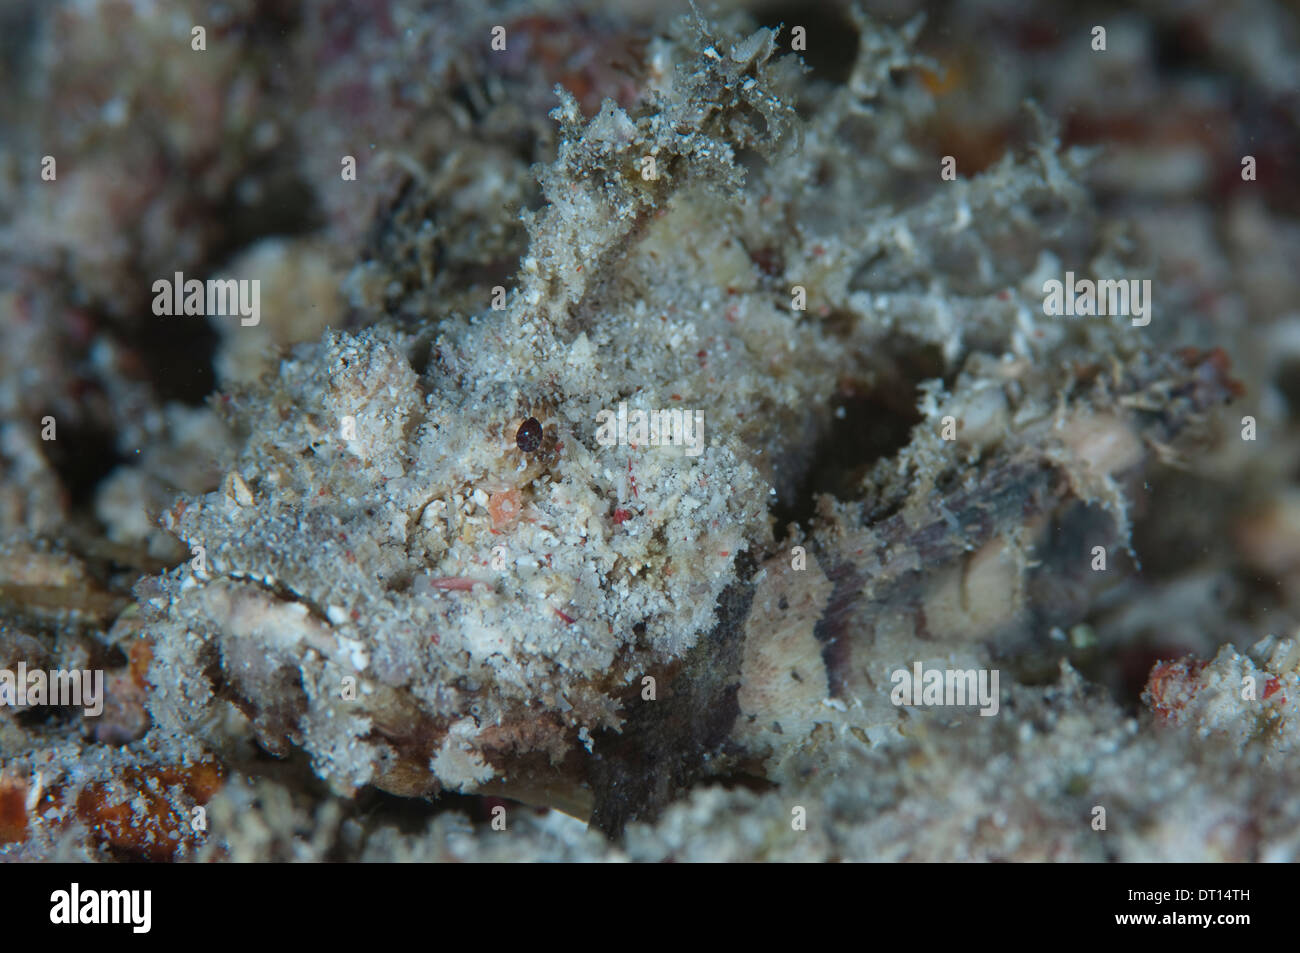 Stachelige Devilfish, Inimicus Didactylus, Nahaufnahme von getarnten Individuum, Halmahera, Molukken, Indonesien Stockfoto